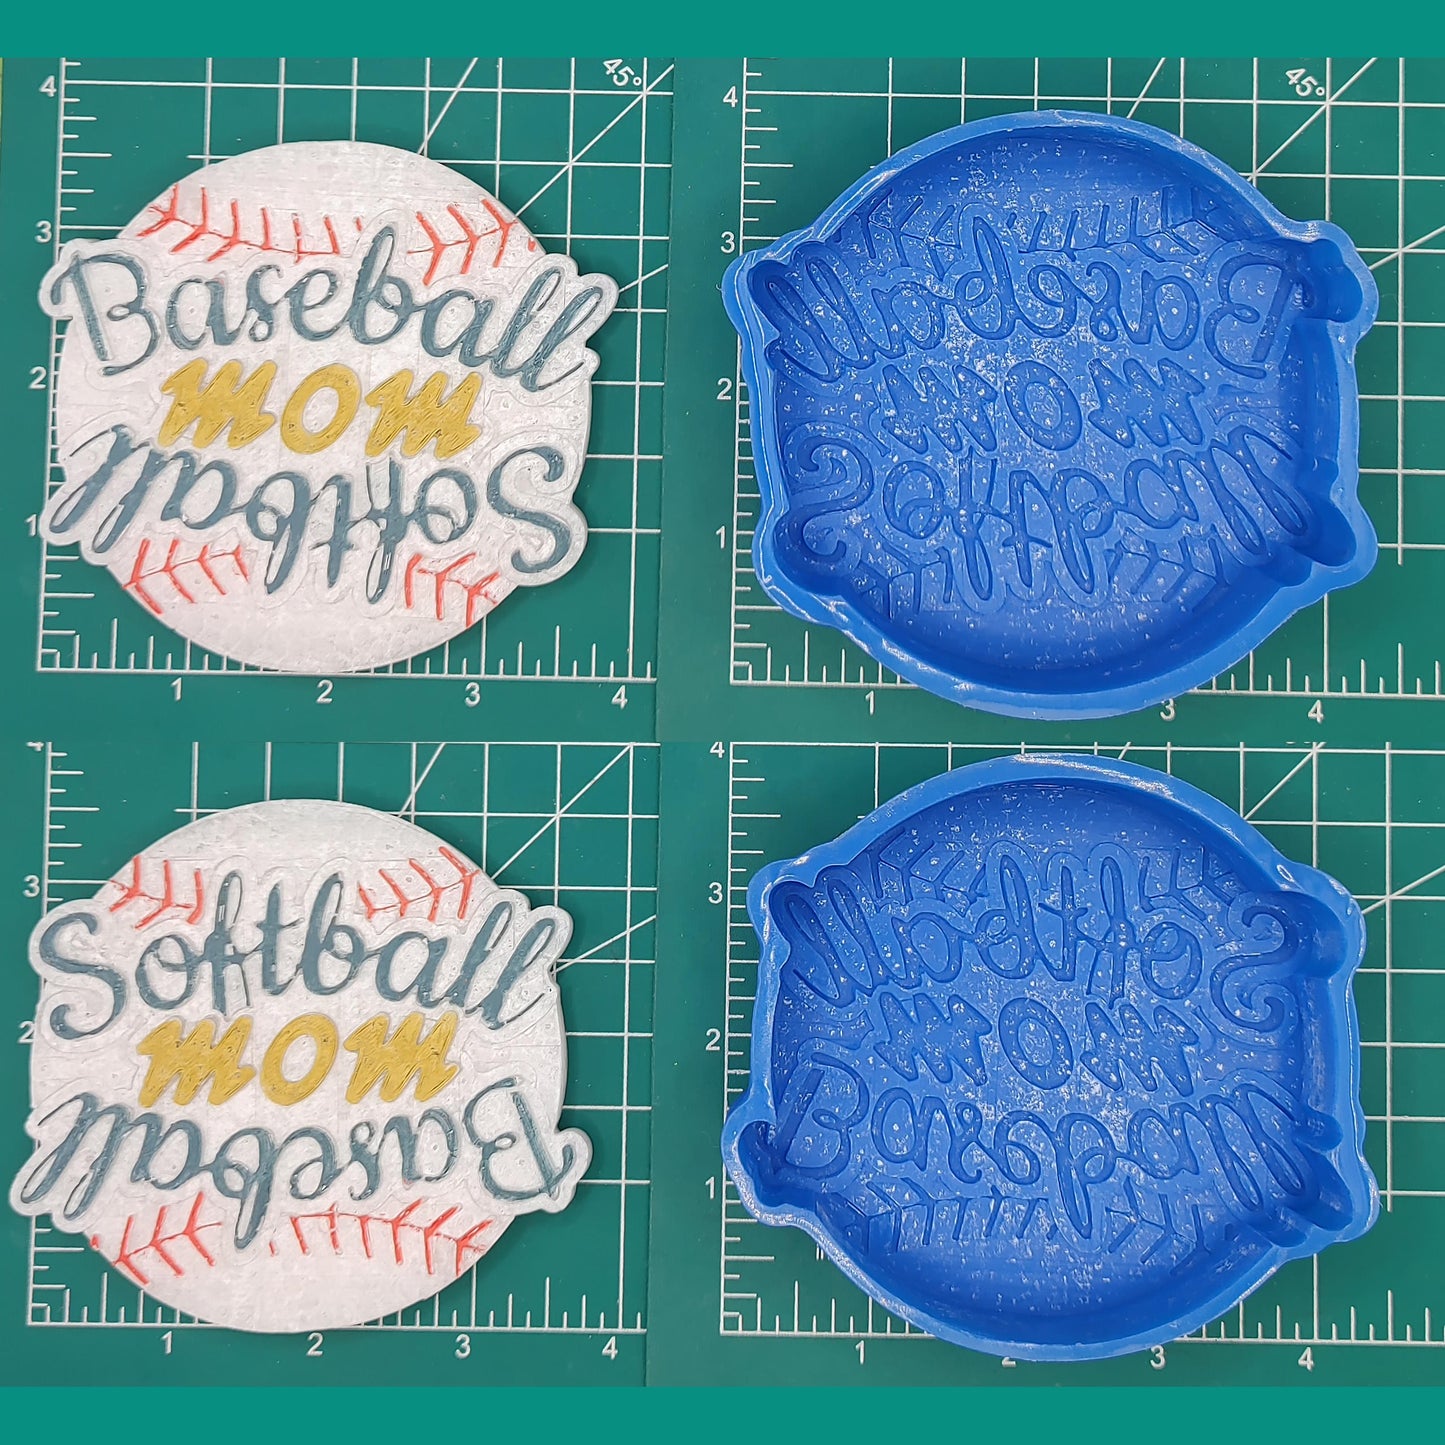 Baseball and Softball Mom - Silicone Freshie Mold